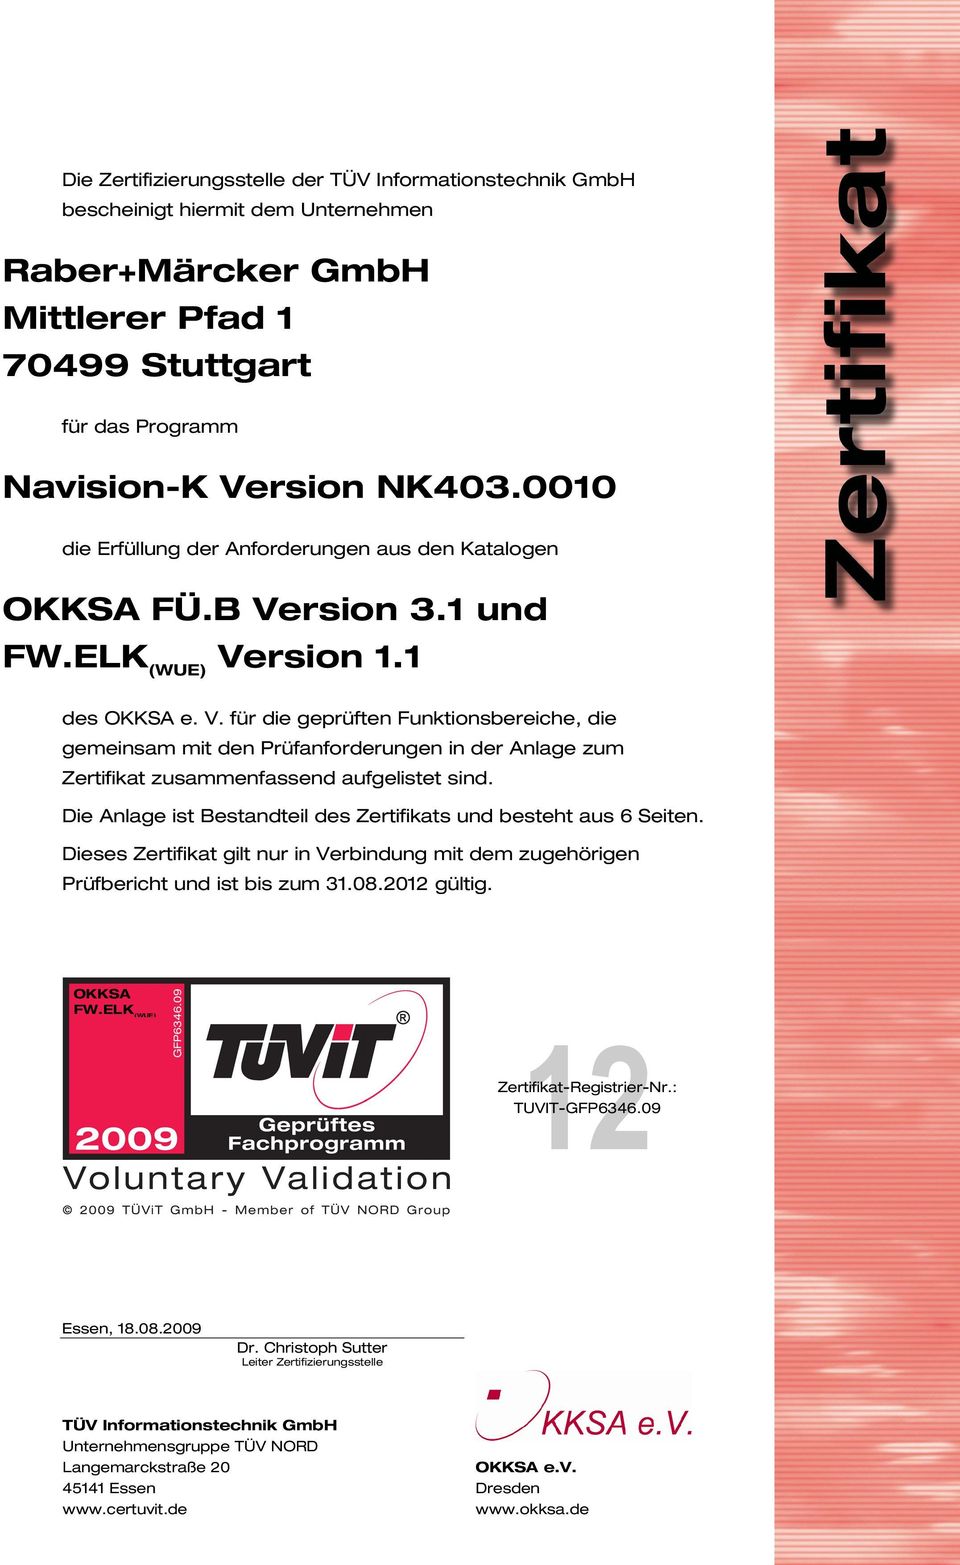 rsion 3.1 und FW.ELK (WUE) Version 1.1 des OKKSA e. V. für die geprüften Funktionsbereiche, die gemeinsam mit den Prüfanforderungen in der Anlage zum Zertifikat zusammenfassend aufgelistet sind.